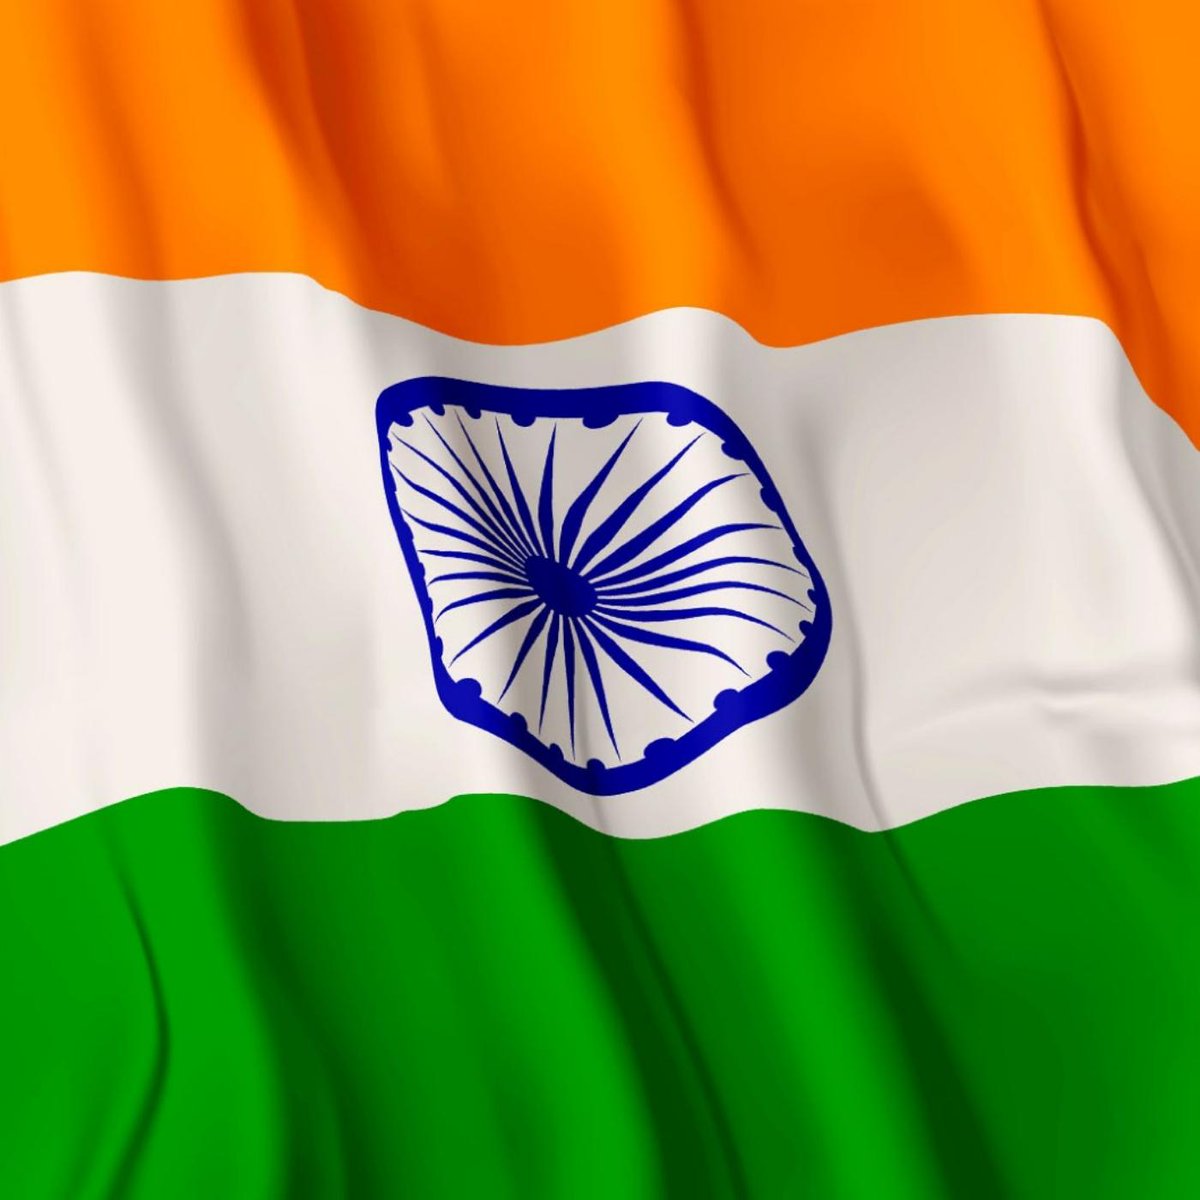 Happy Independence Day to every Indian! #IndependenceDayIndia #BurjKhalifa #flag #IndependenceDay #IndependenceDay2023